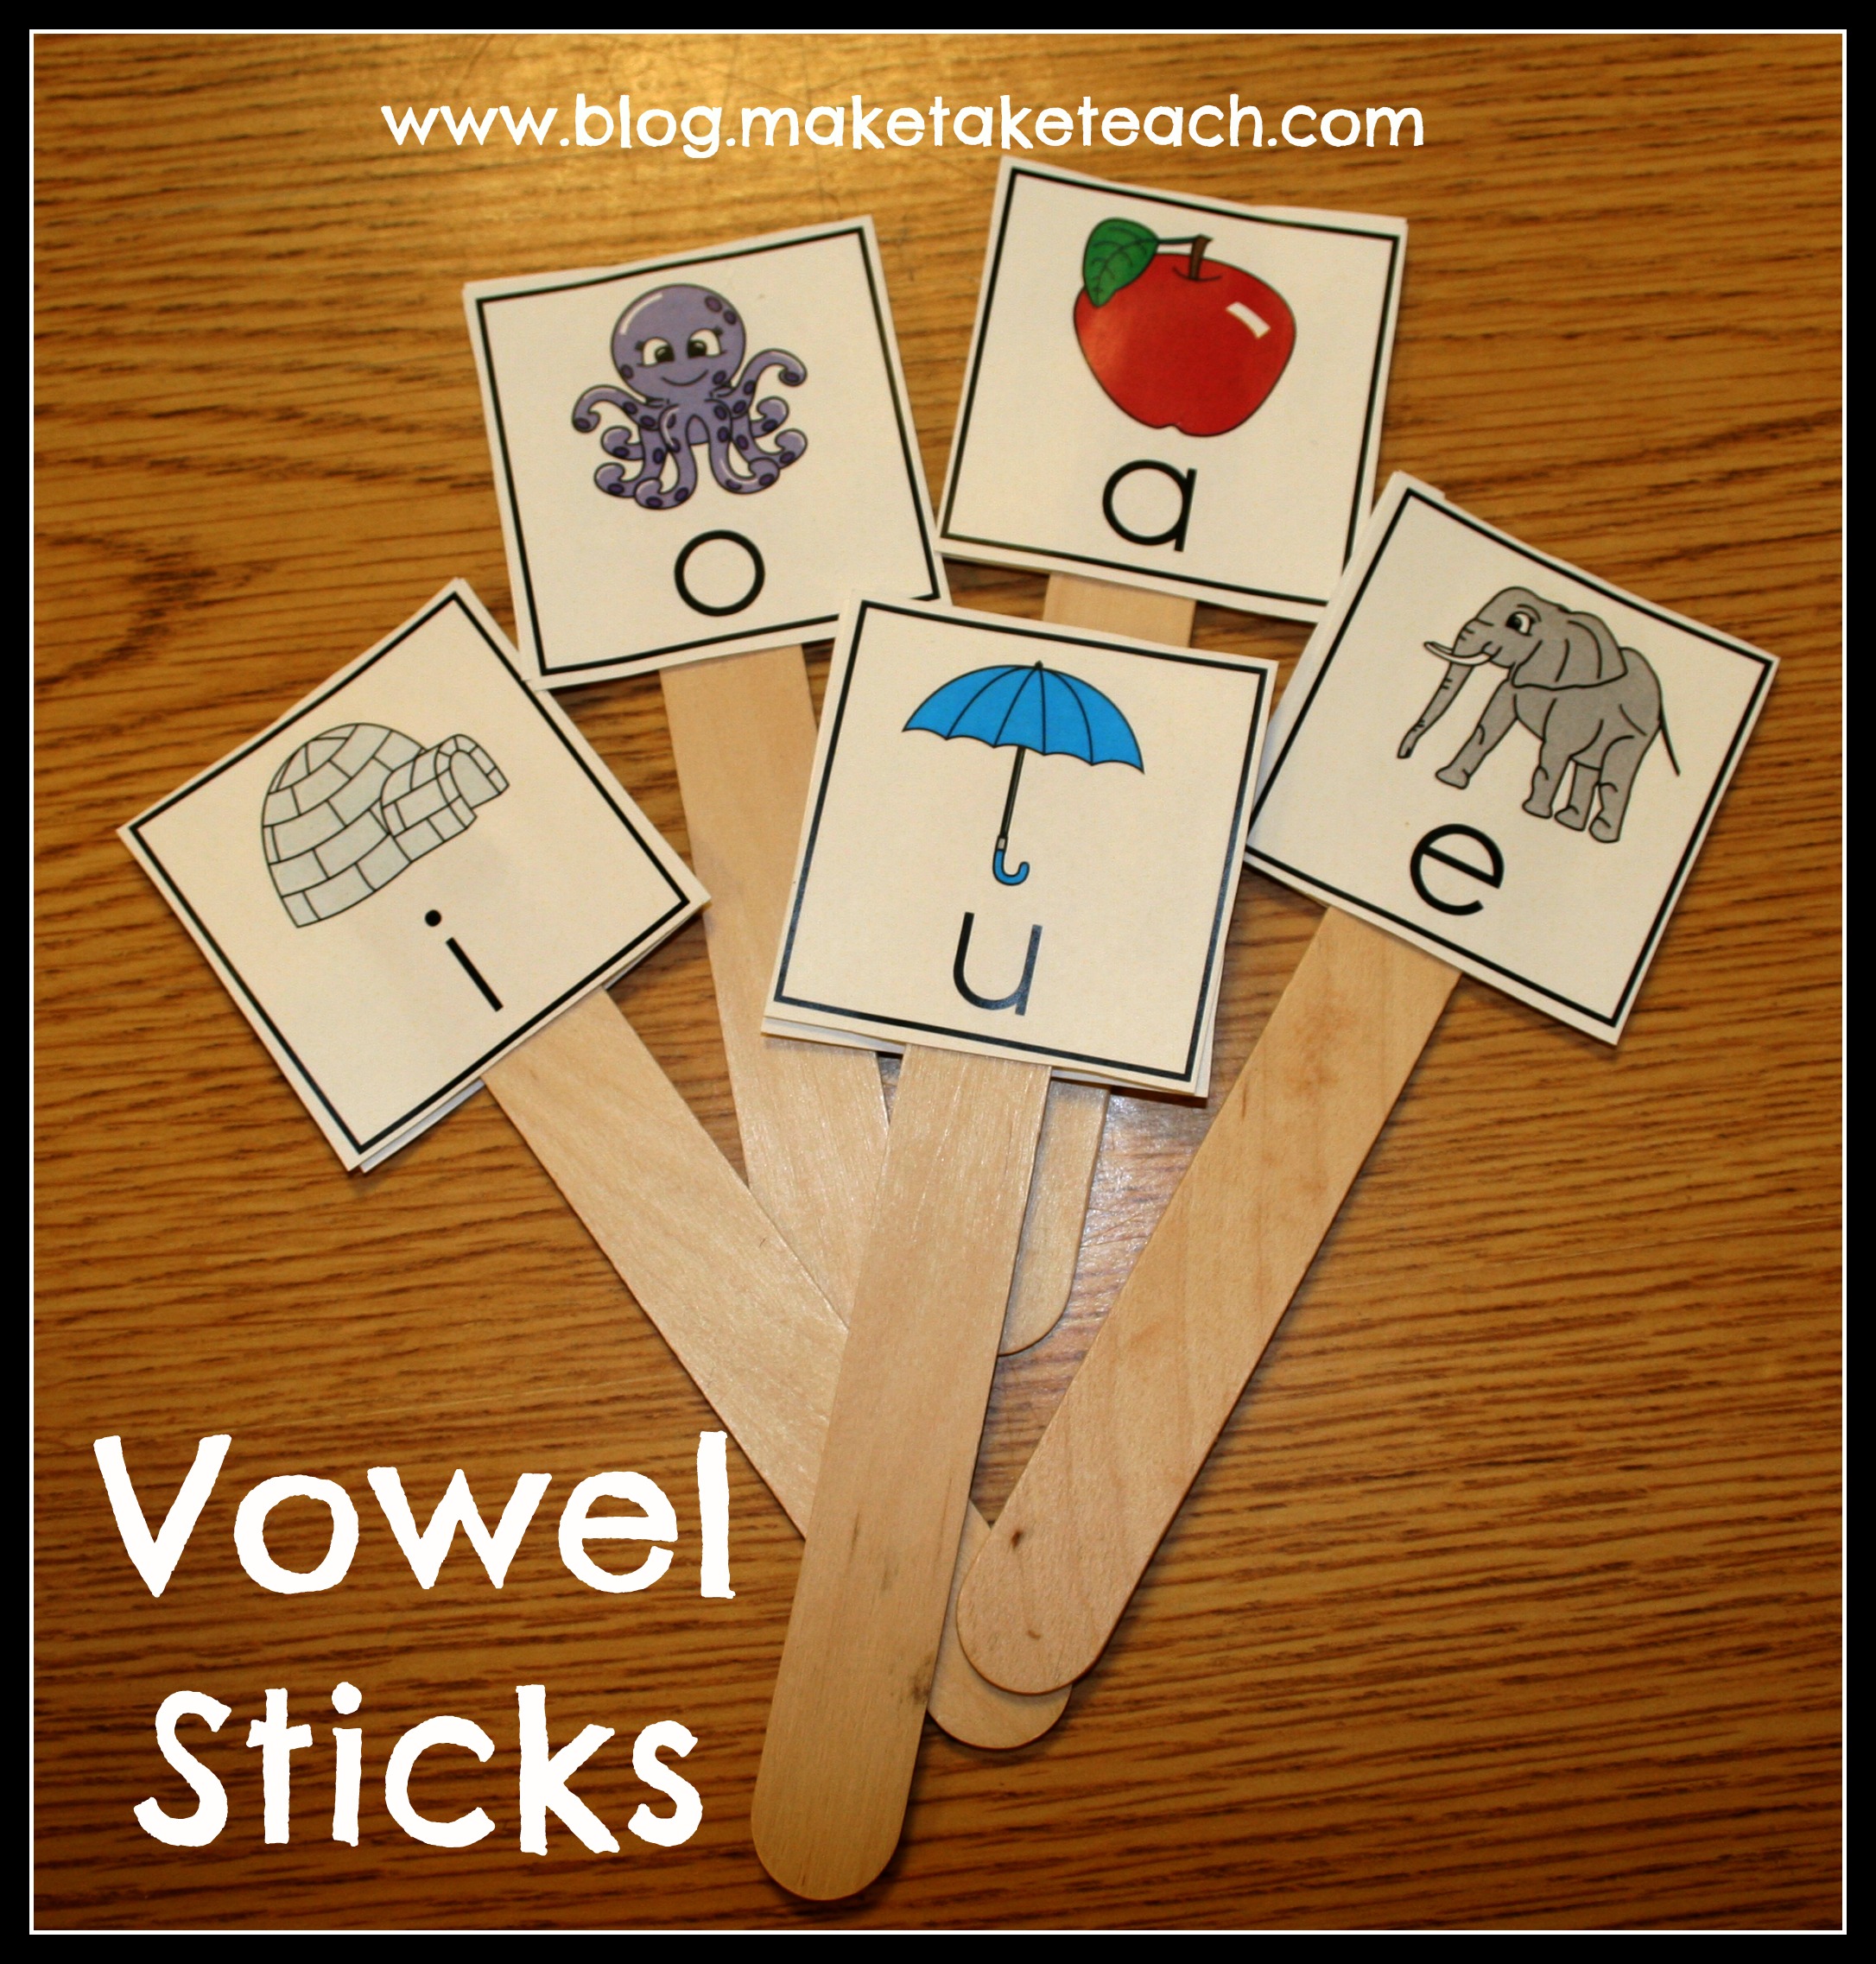 What makes a vowel a vowel - vilspecialist